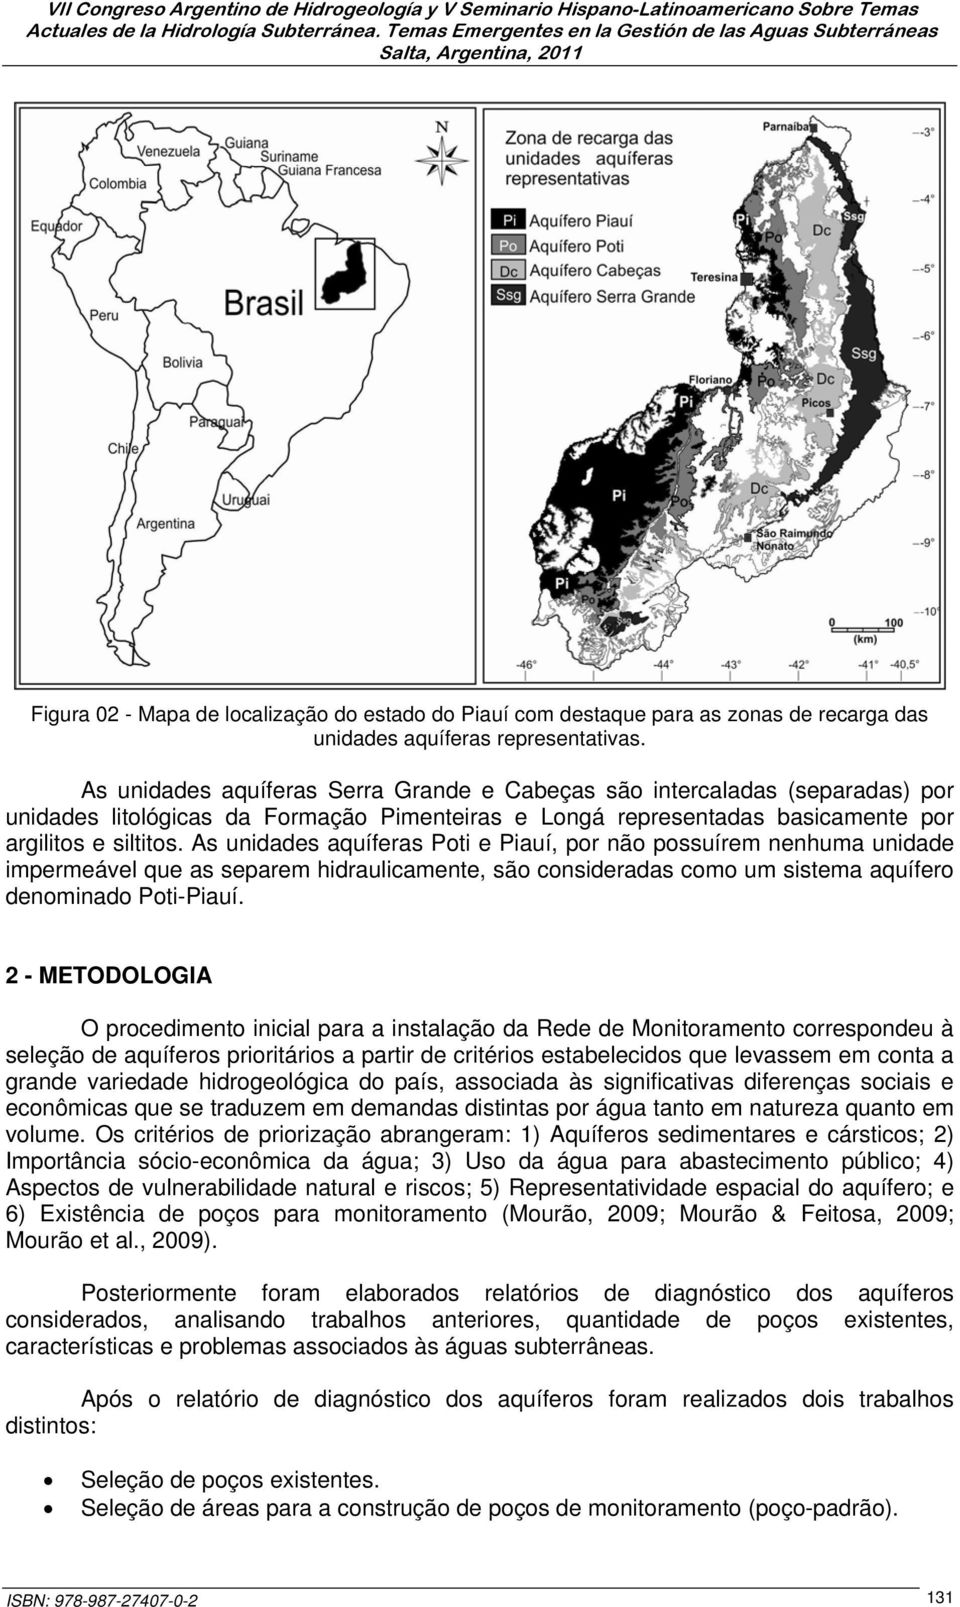 As unidades aquíferas Poti e Piauí, por não possuírem nenhuma unidade impermeável que as separem hidraulicamente, são consideradas como um sistema aquífero denominado Poti-Piauí.